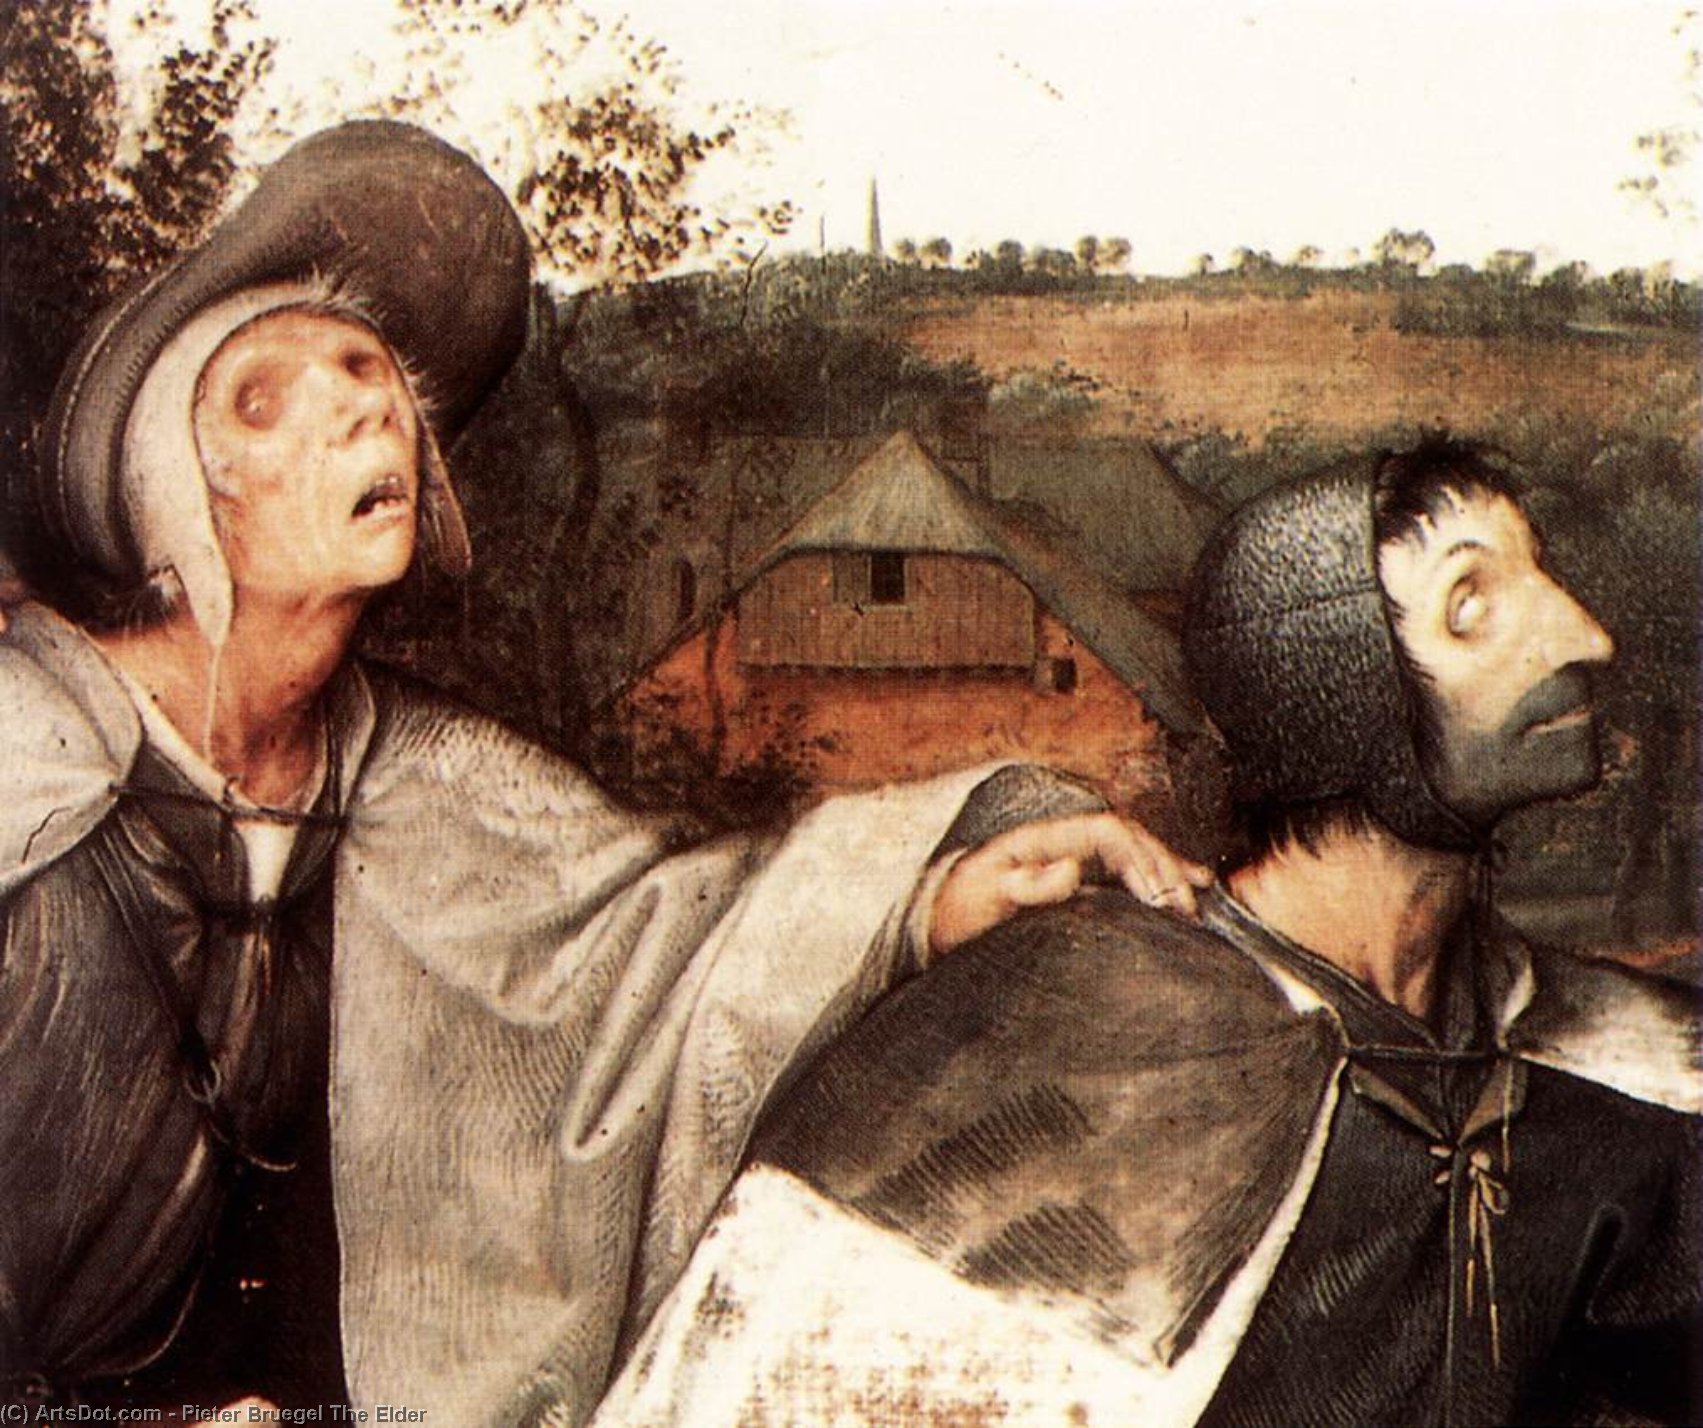 WikiOO.org - אנציקלופדיה לאמנויות יפות - ציור, יצירות אמנות Pieter Bruegel The Elder - The Parable of the Blind Leading the Blind (detail)